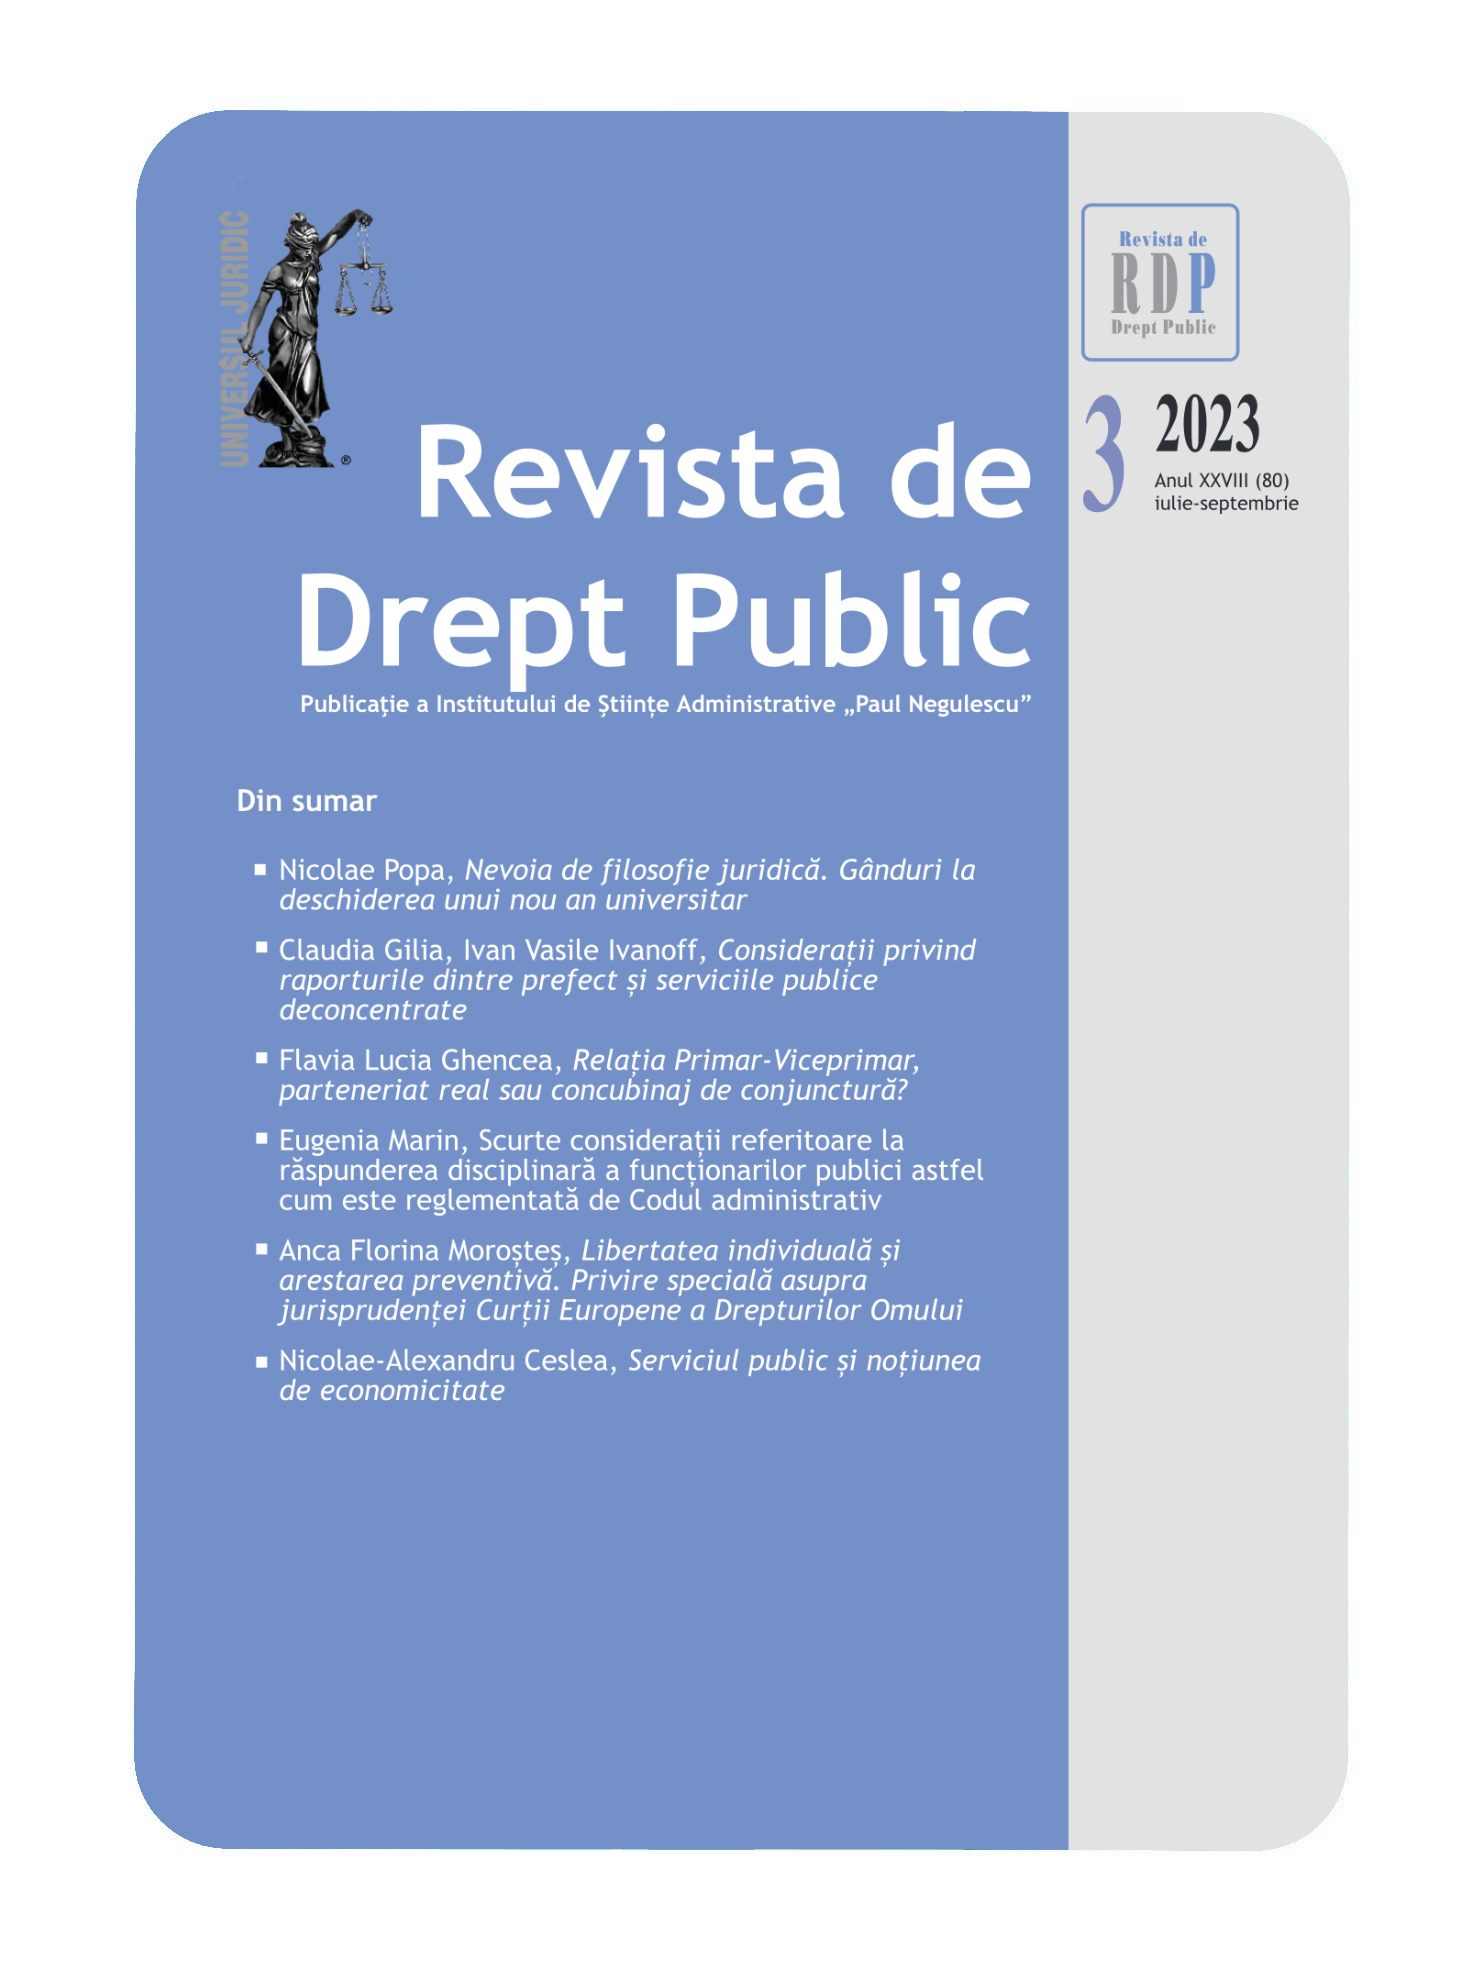 Serviciul public și noțiunea de economicitate Cover Image